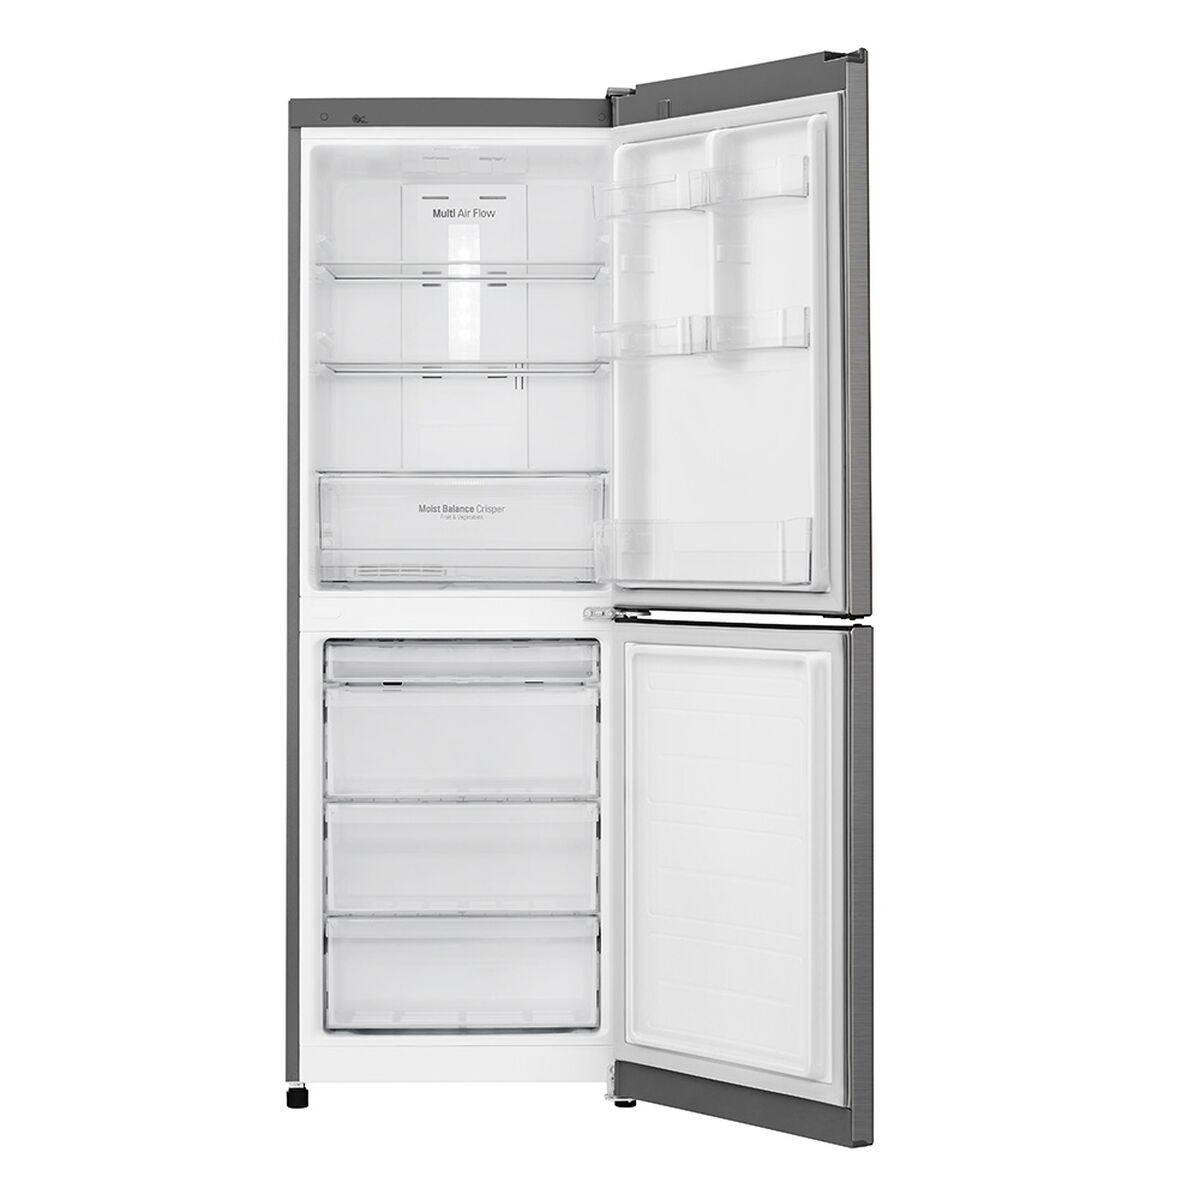 Refrigerador No Frost LG LB31MPP 277 lt